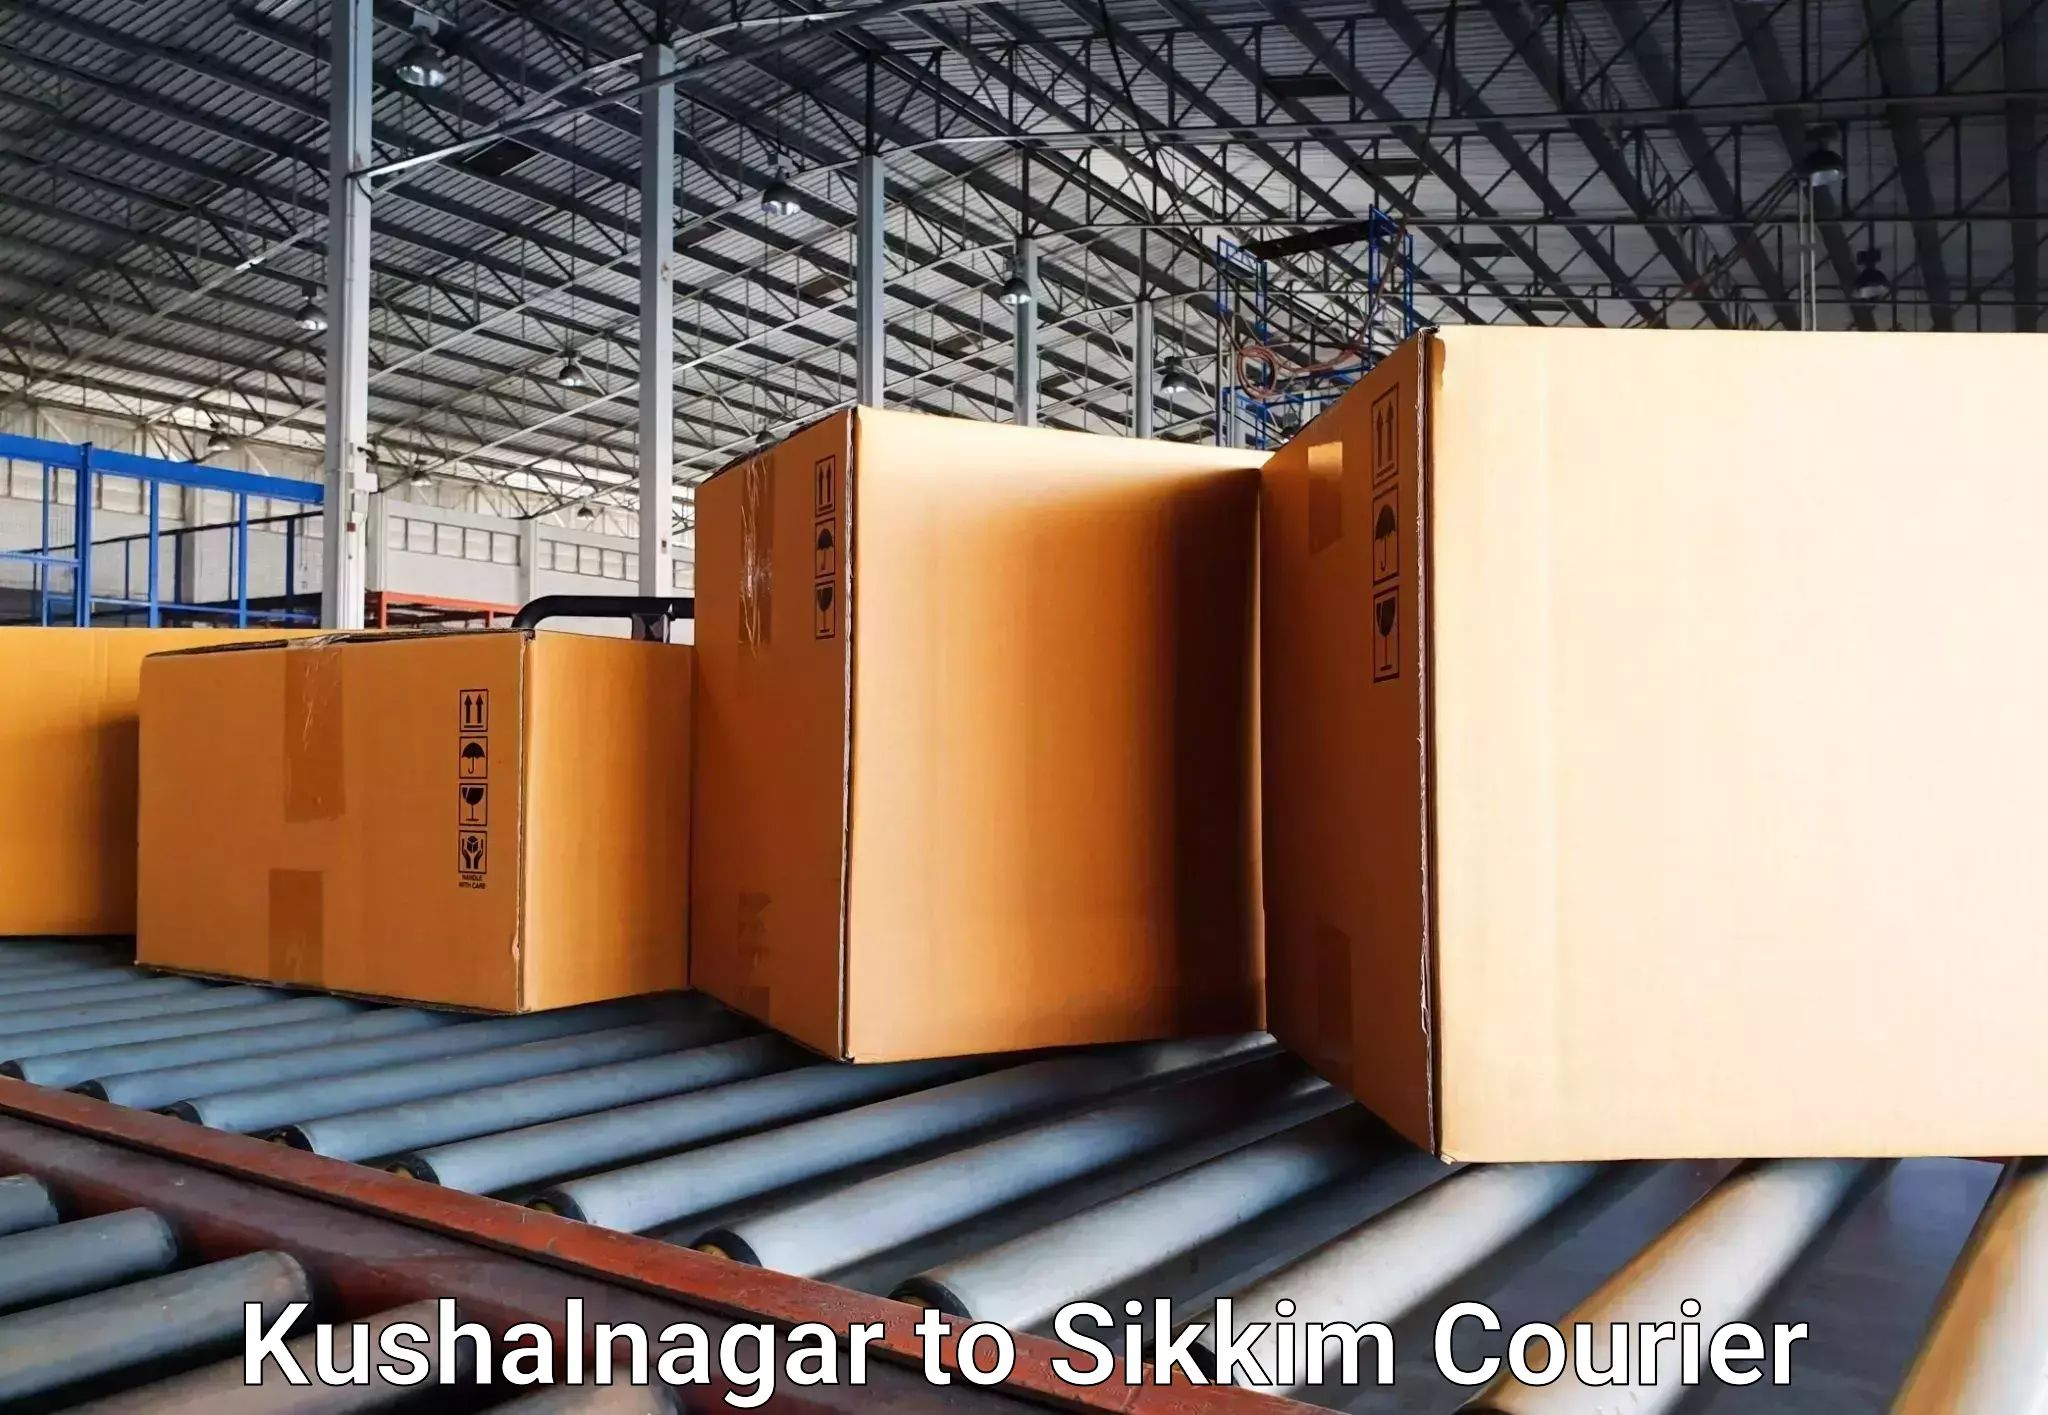 Luggage shipment specialists Kushalnagar to Mangan